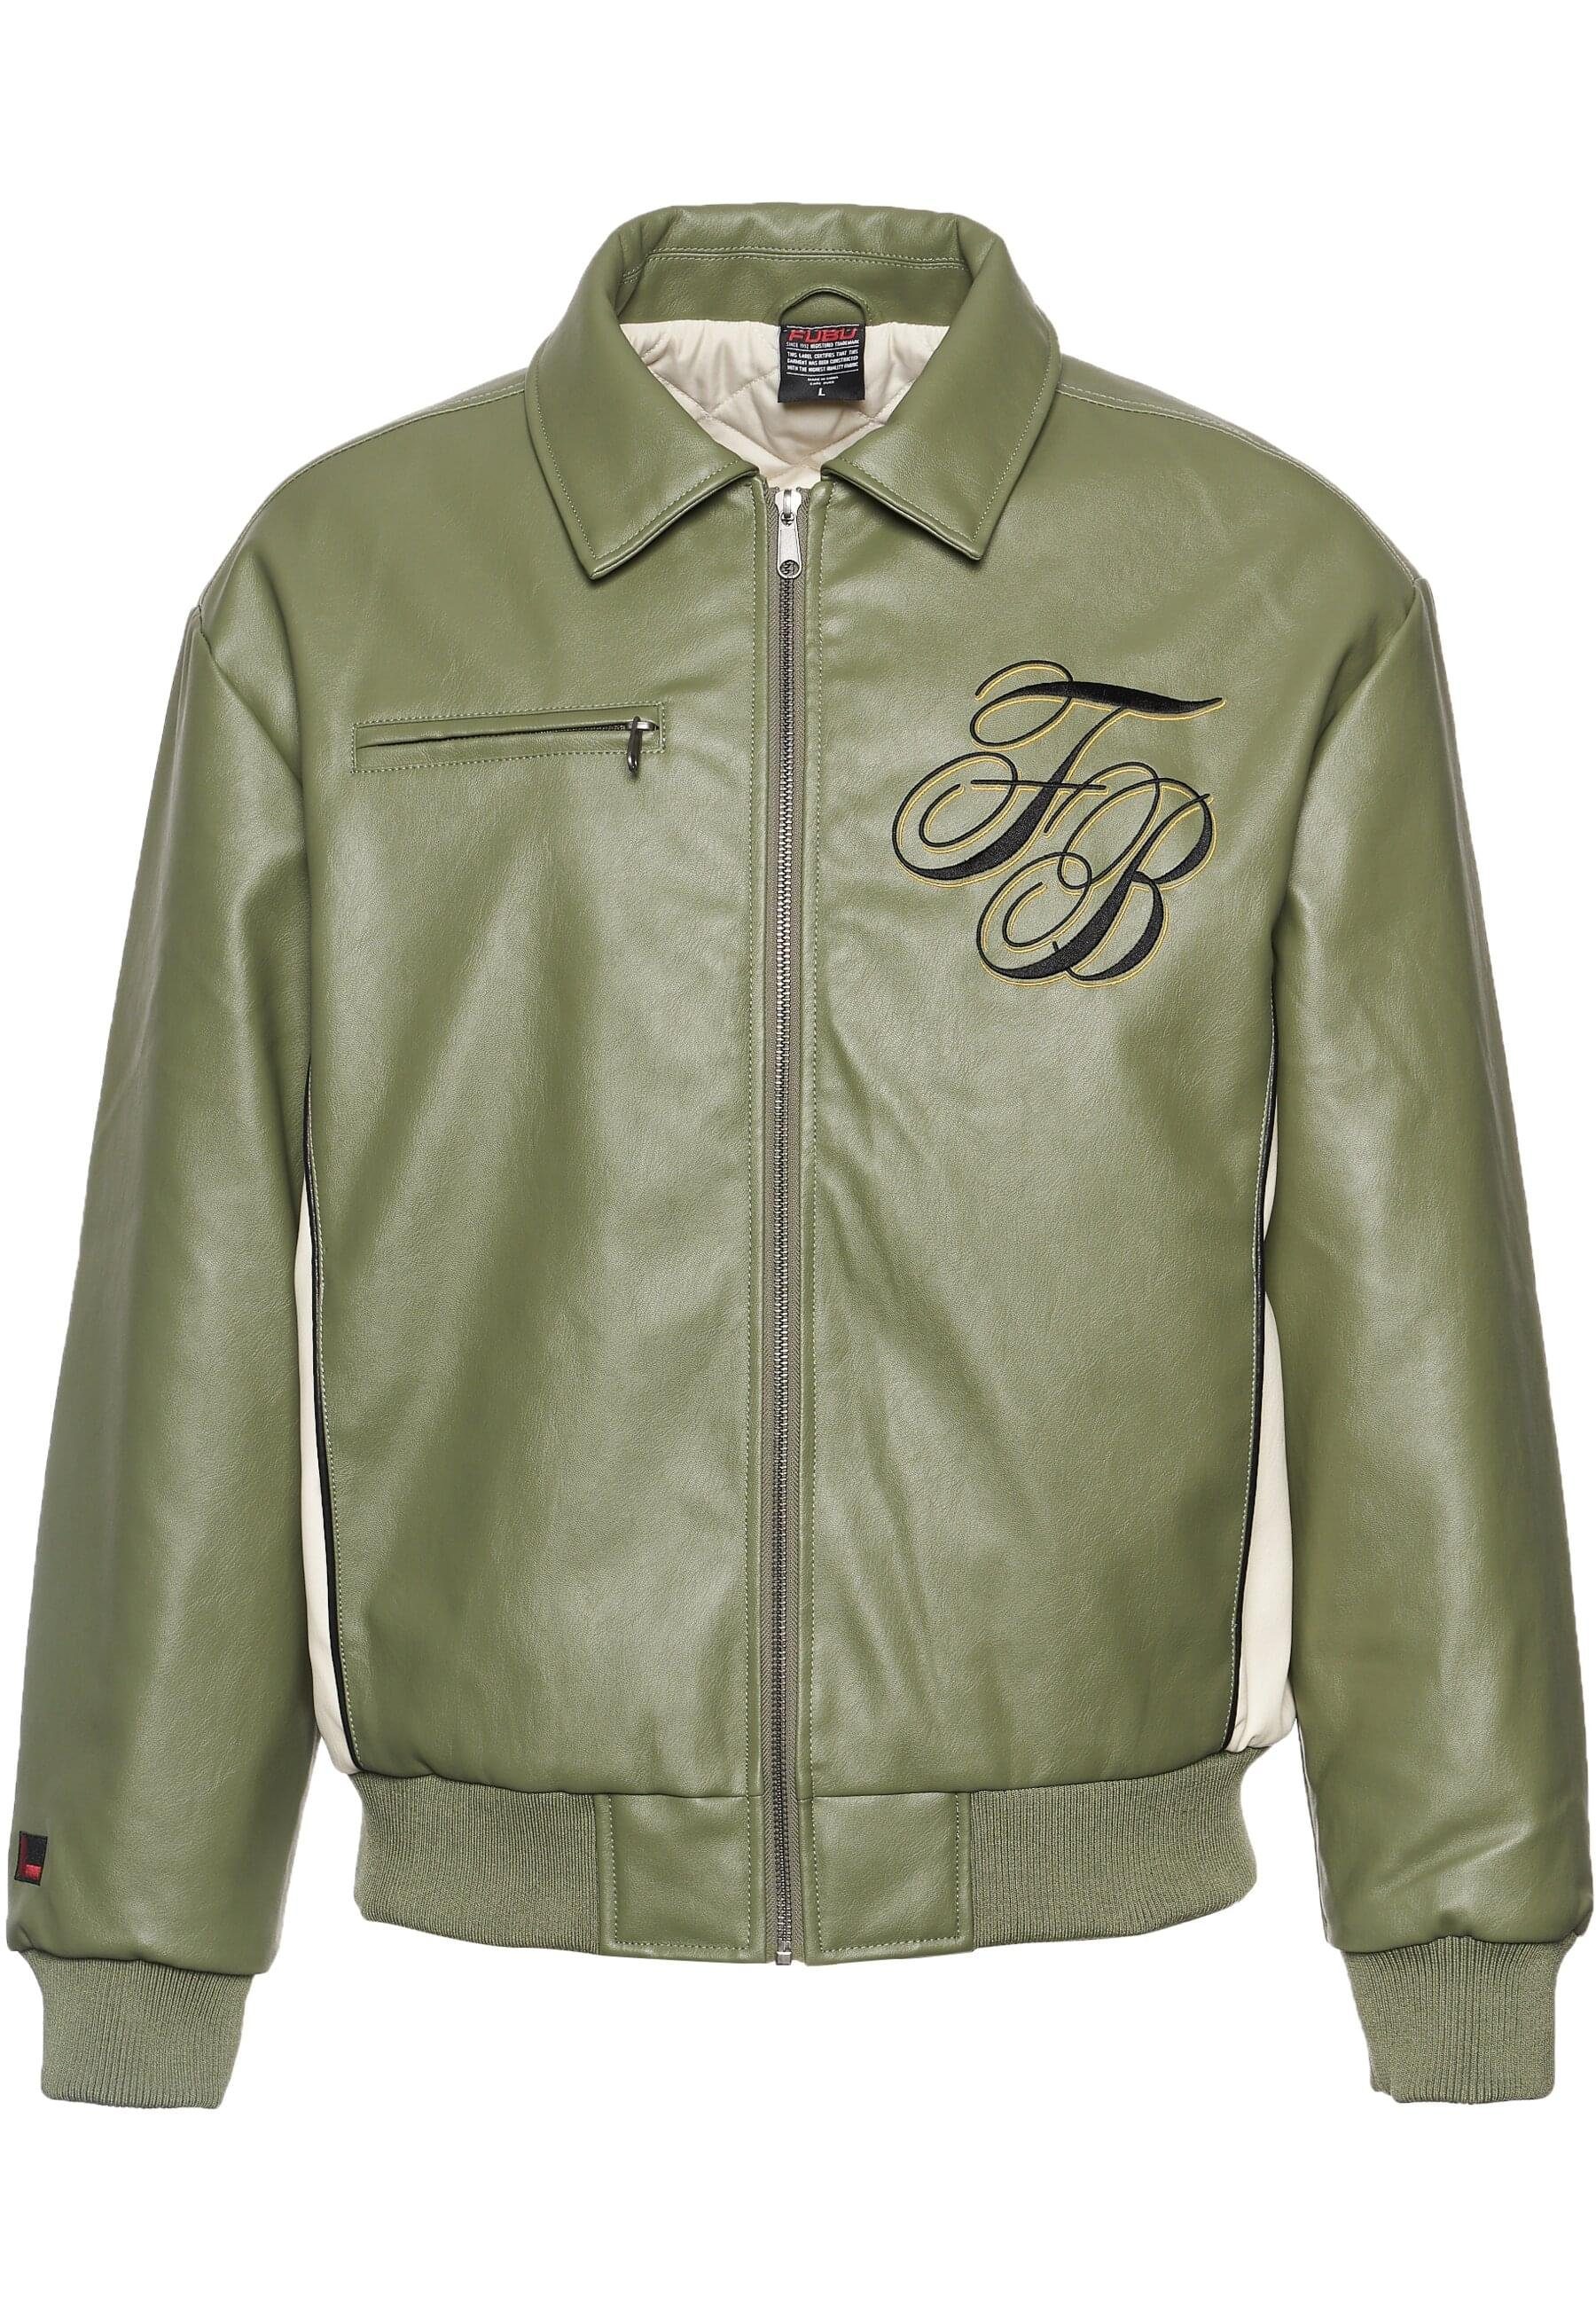 Fubu Collegejacke Fubu Herren FM234-008-2 FUBU FB Initials Leather Coach Jacket (1-St)